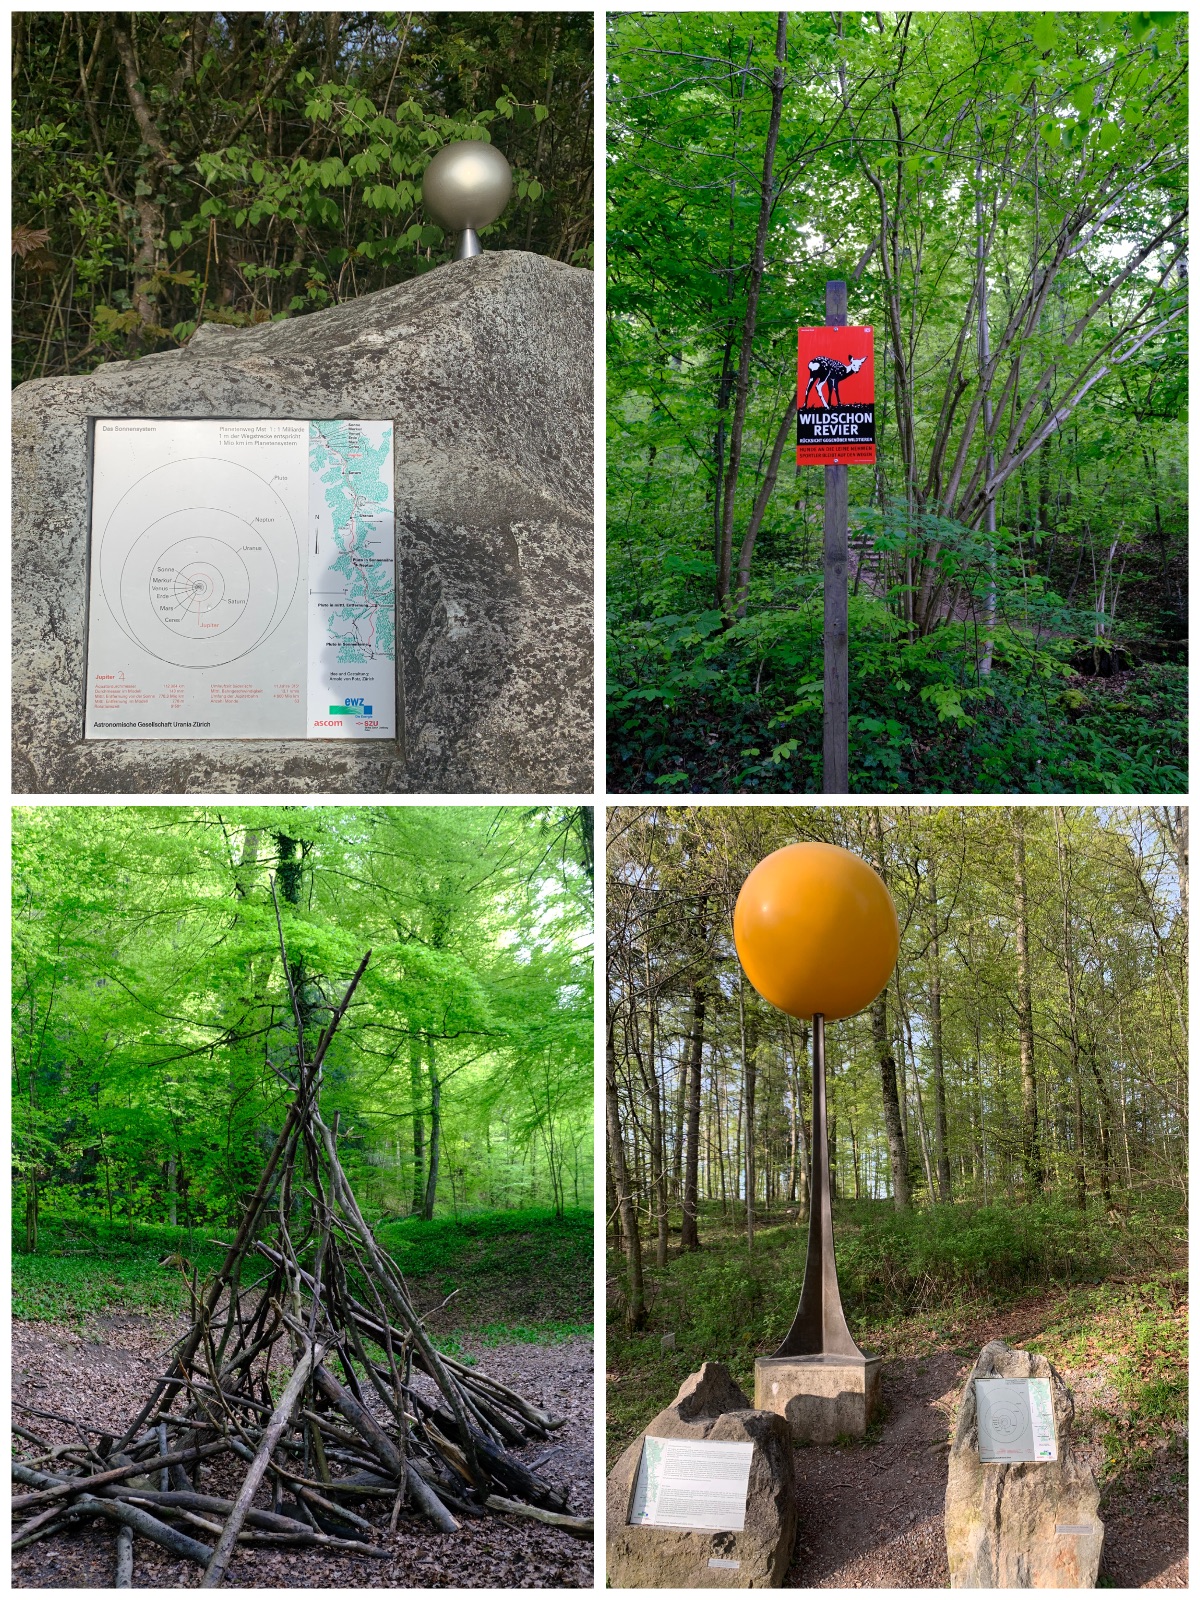 四张图组成的拼图，左上角是一个大石上嵌着的一块金属板，板子上是太阳系行星轨道图和关于木星的介绍，石头顶上立着一个金属制的圆球；右上是翠绿色的树林间一块方形标识，橙红色的牌子上用黑白色画着一只梅花鹿，写着野生动物区；左下是在同样翠绿的山林间，空地上用树枝搭起的一个篝火架；右下是一个巨大的黄色圆球雕塑，被细长的棕黑色的杆子立在半空。